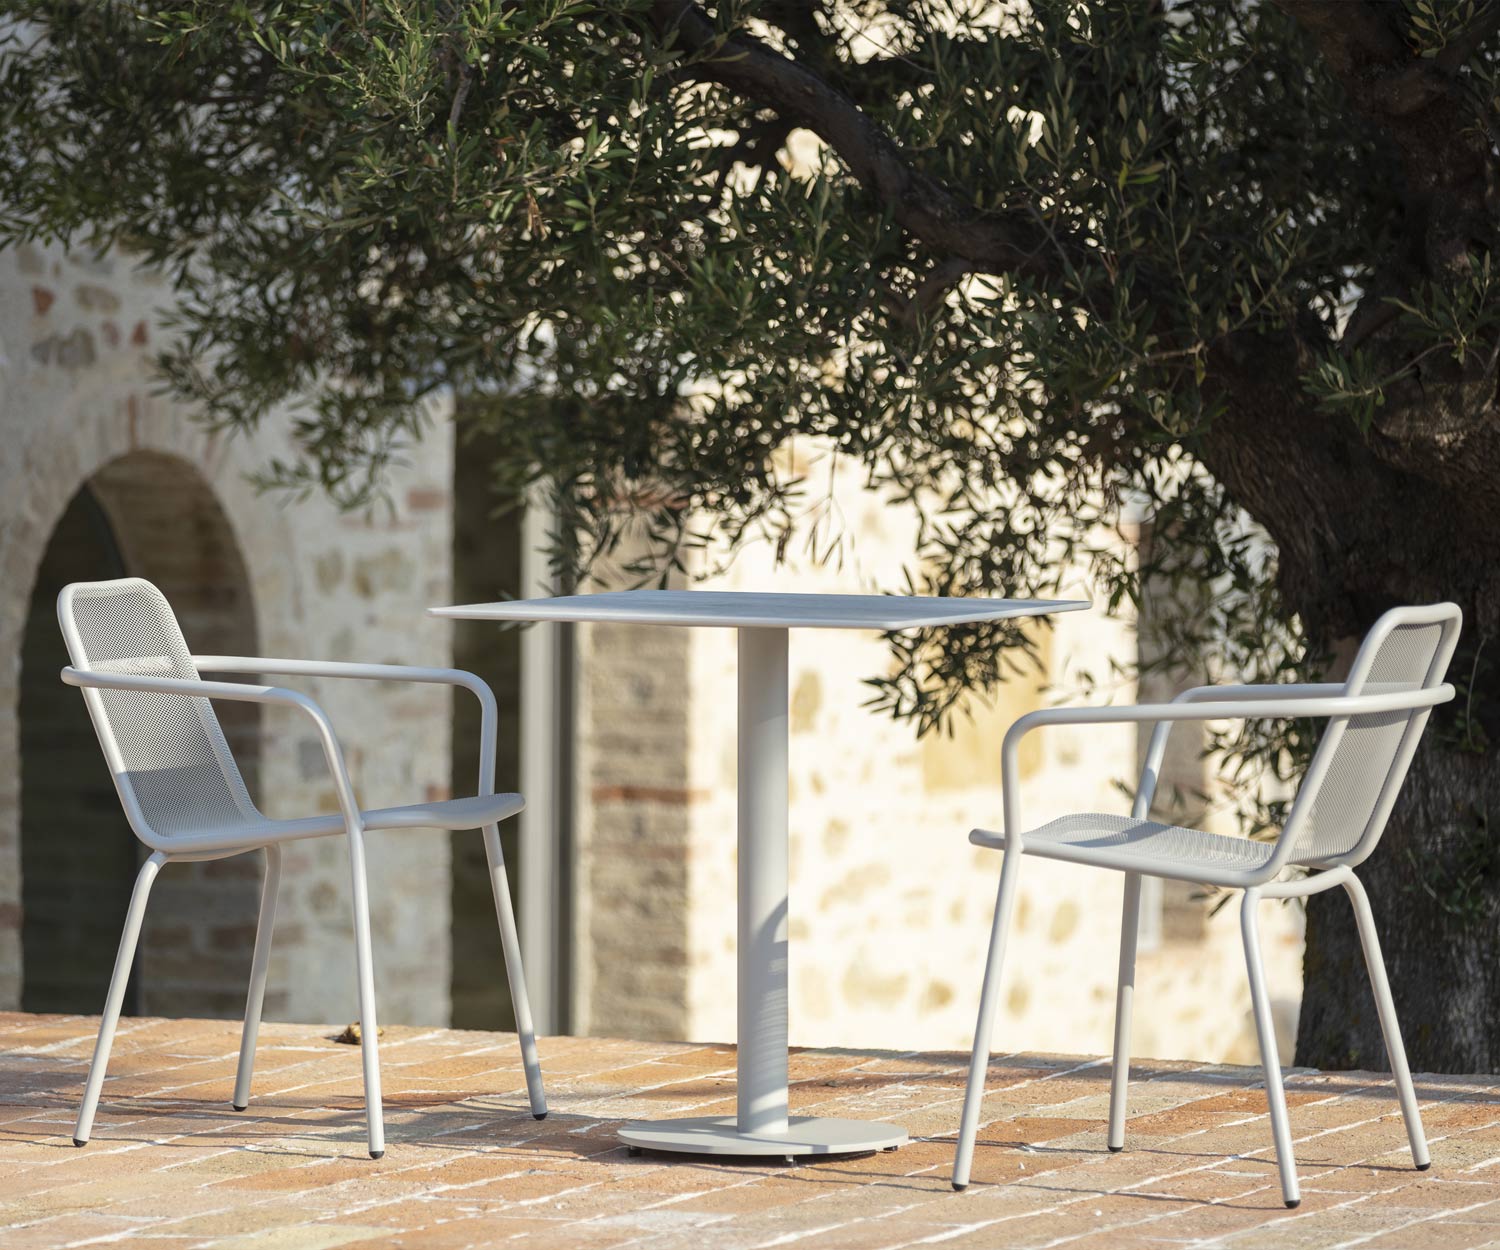 Carré Todus Table de jardin design Branta avec 2 chaises sur terrasse